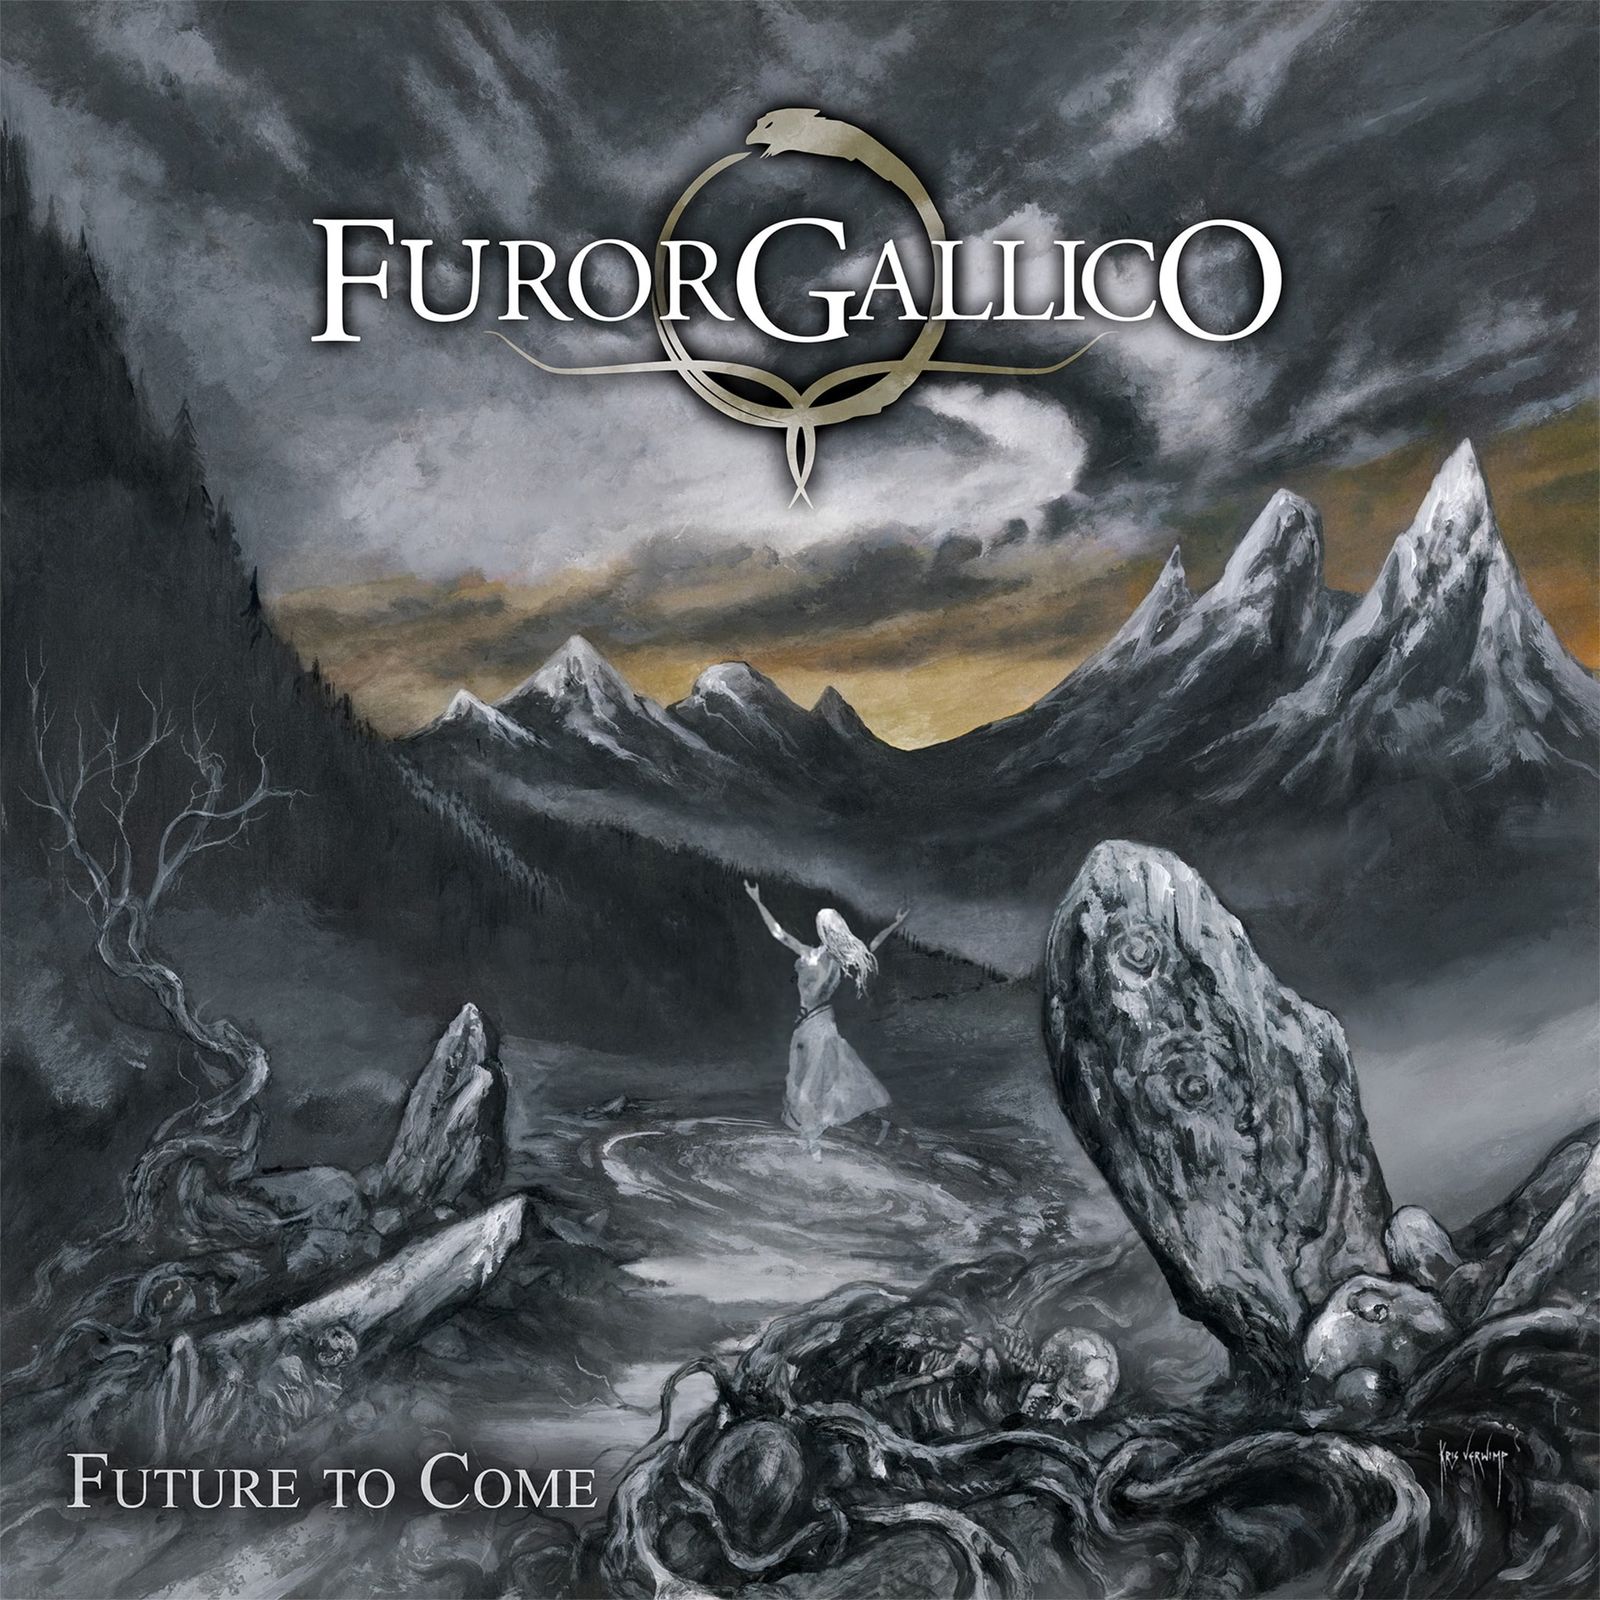 Furor Gallico - Birth of the Sun (clip)